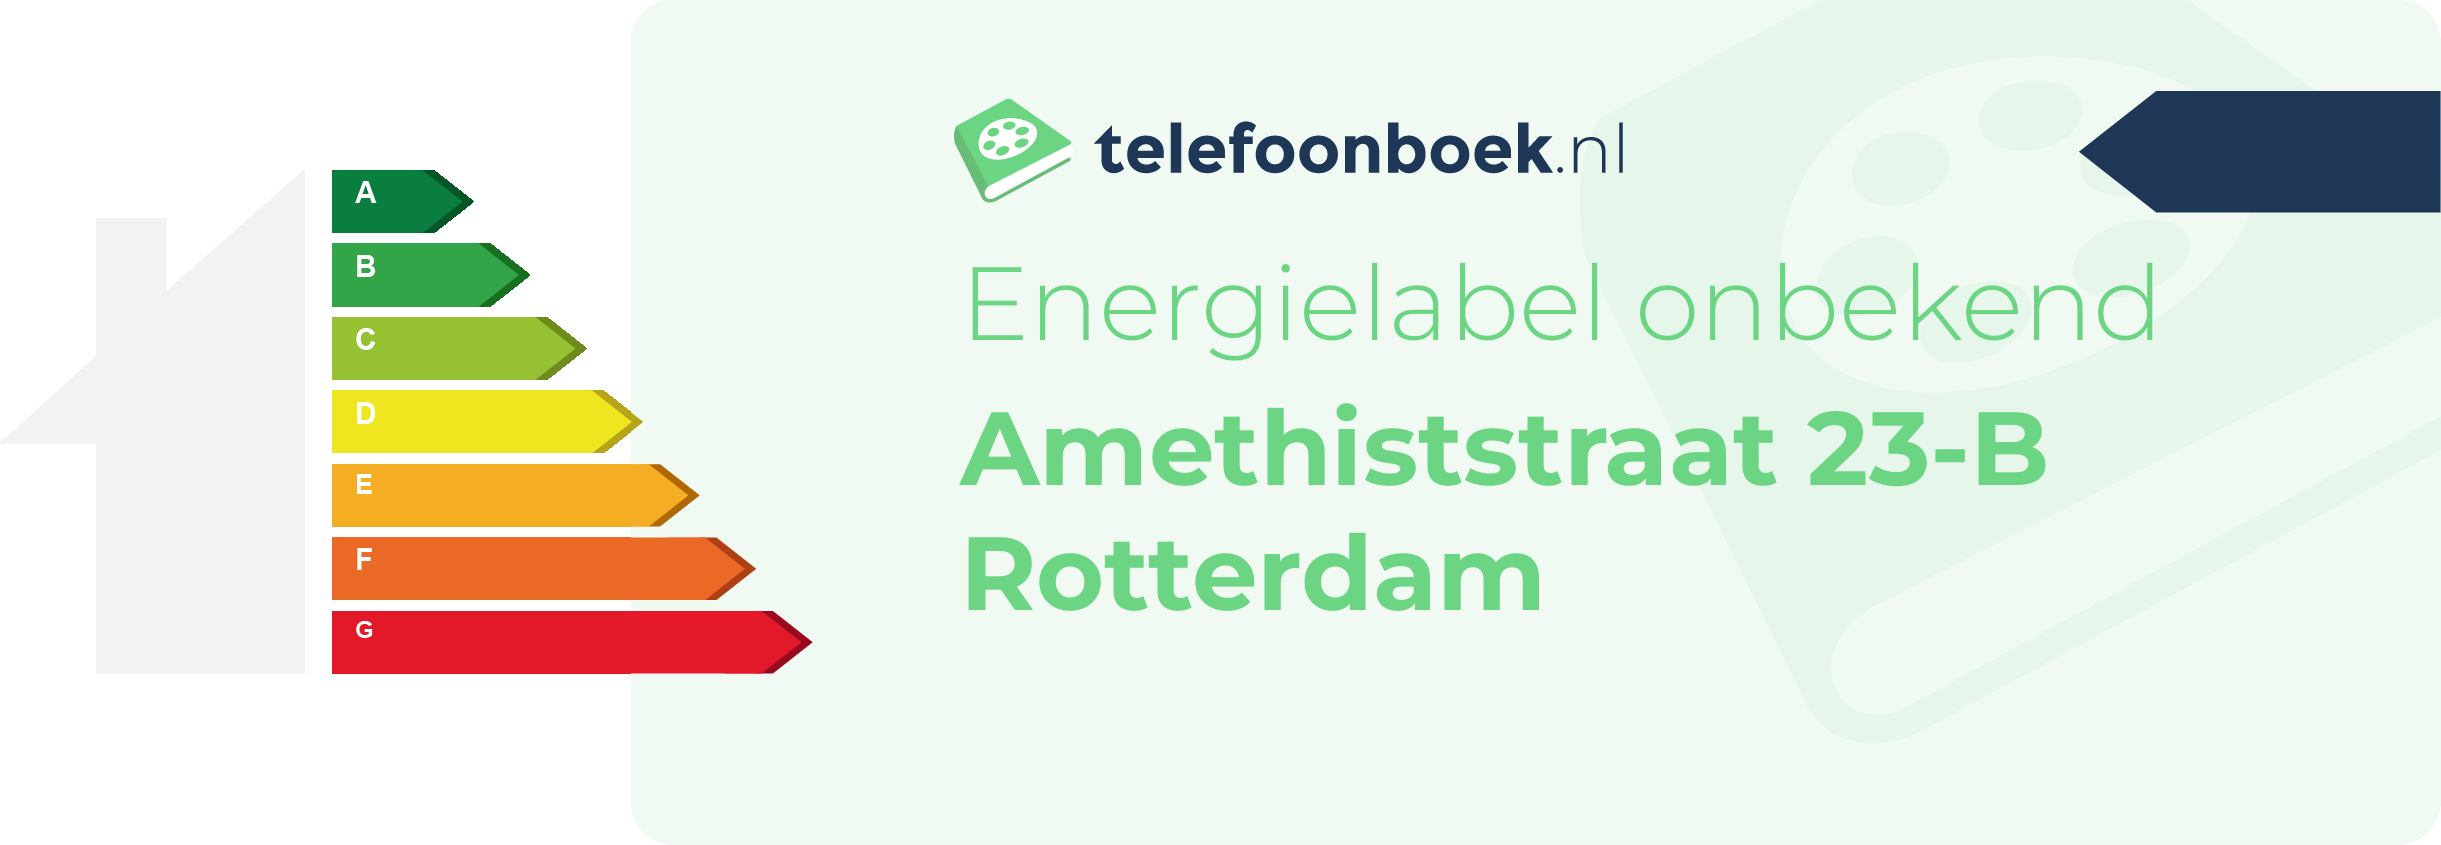 Energielabel Amethiststraat 23-B Rotterdam